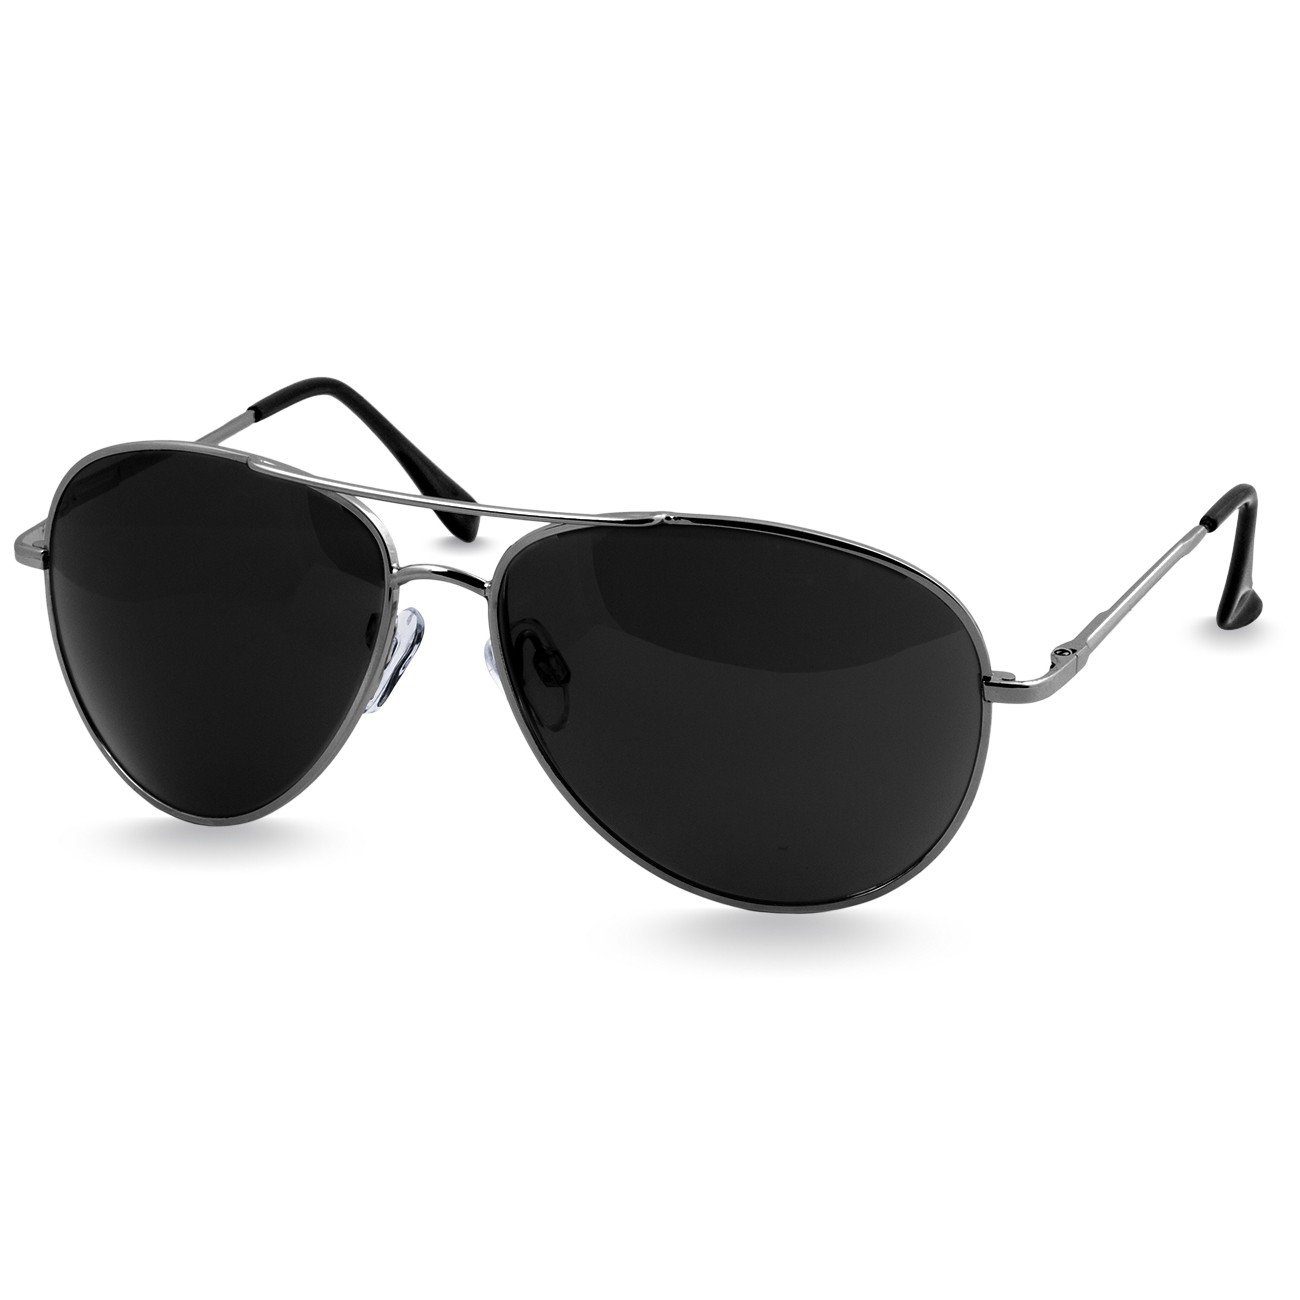 silber schwarz Caspar Sonnenbrille Unisex SG013 Retro / Pilotenbrille klassische